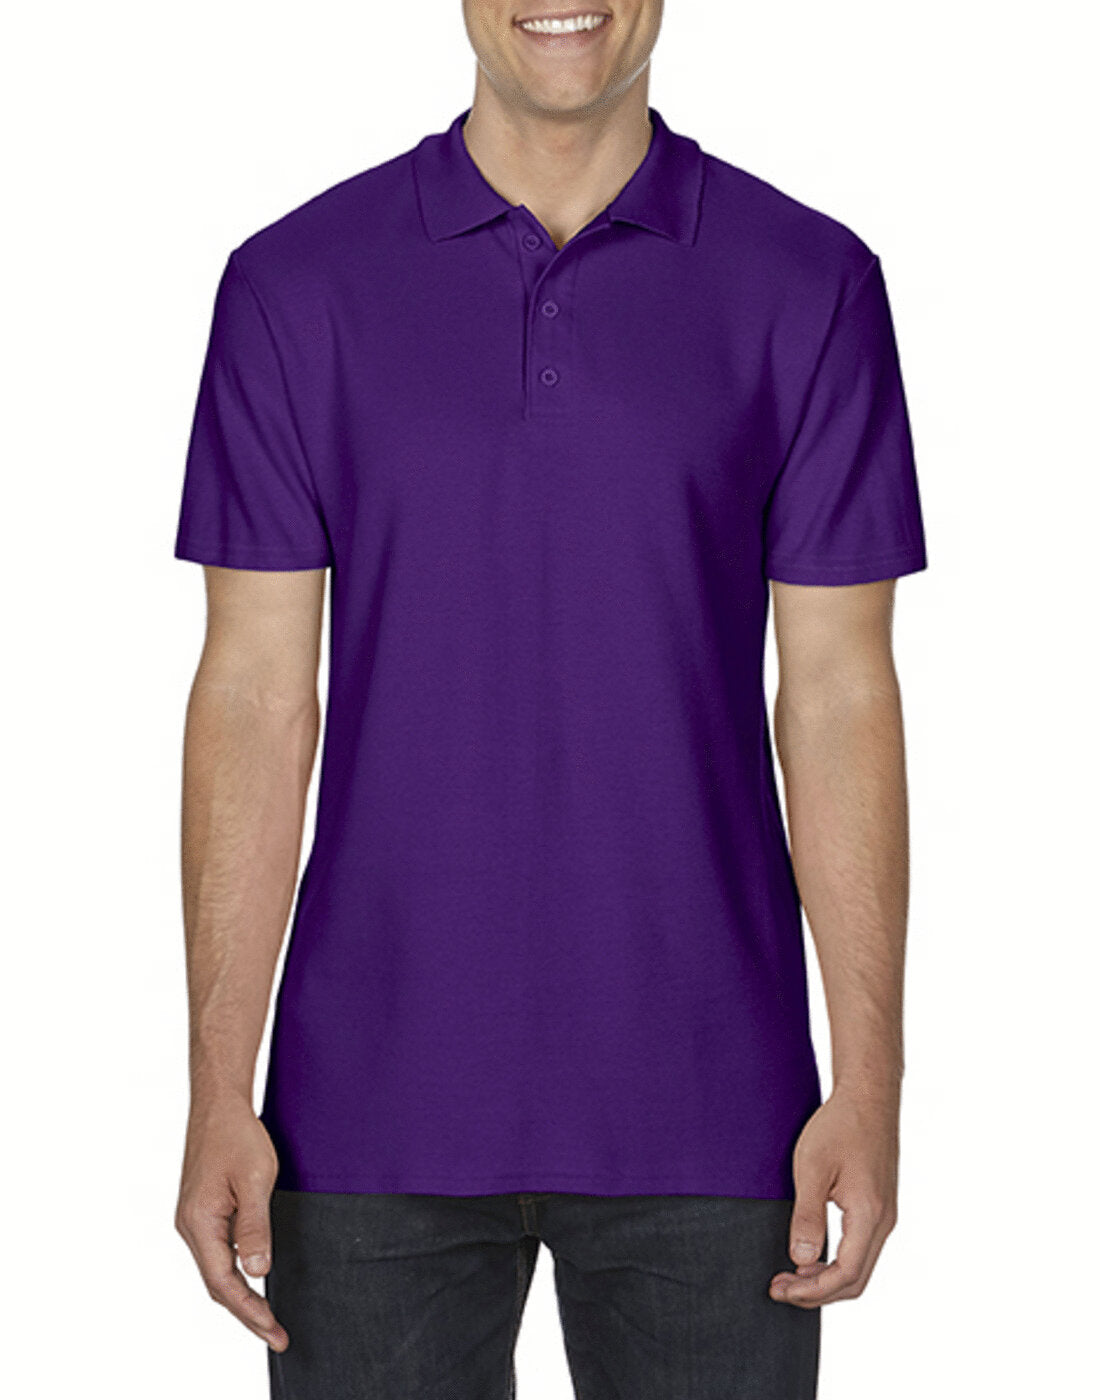 Gildan Softstyle Double Pique Polo - Purple